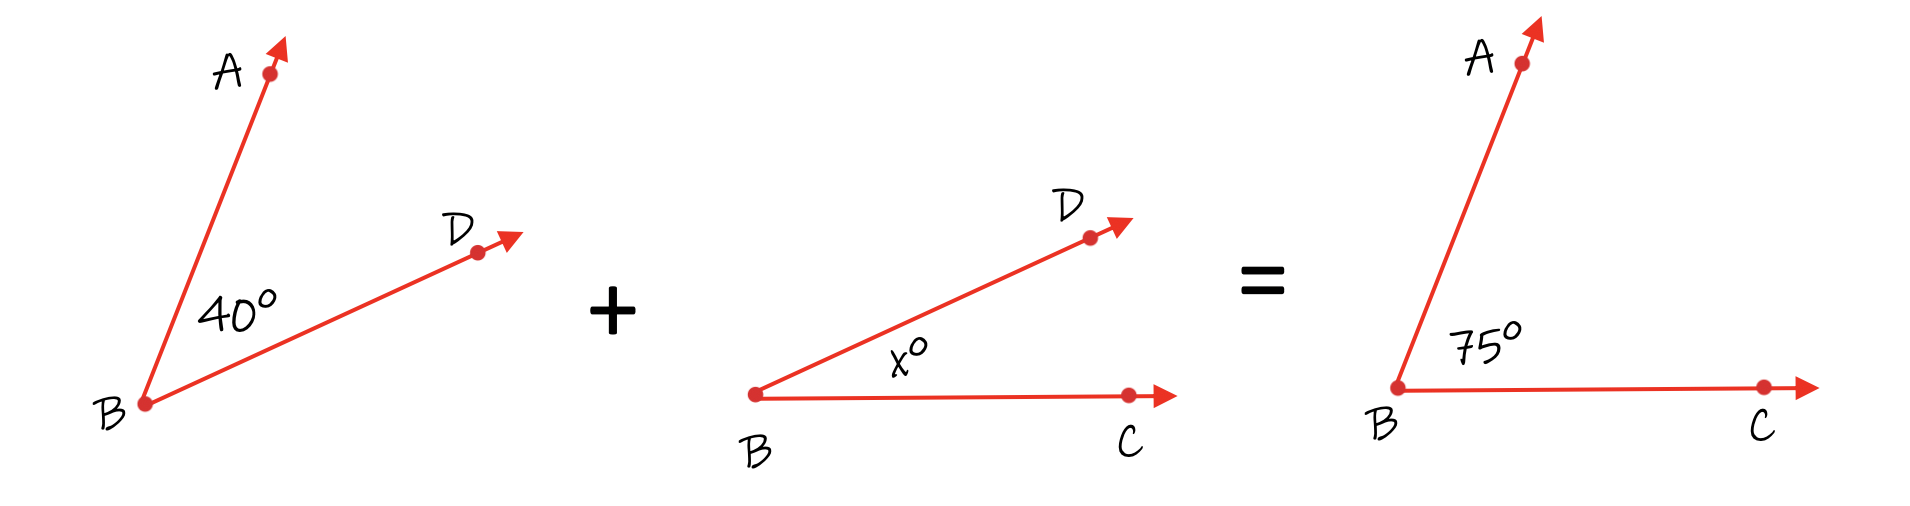 angle-addition-postulate